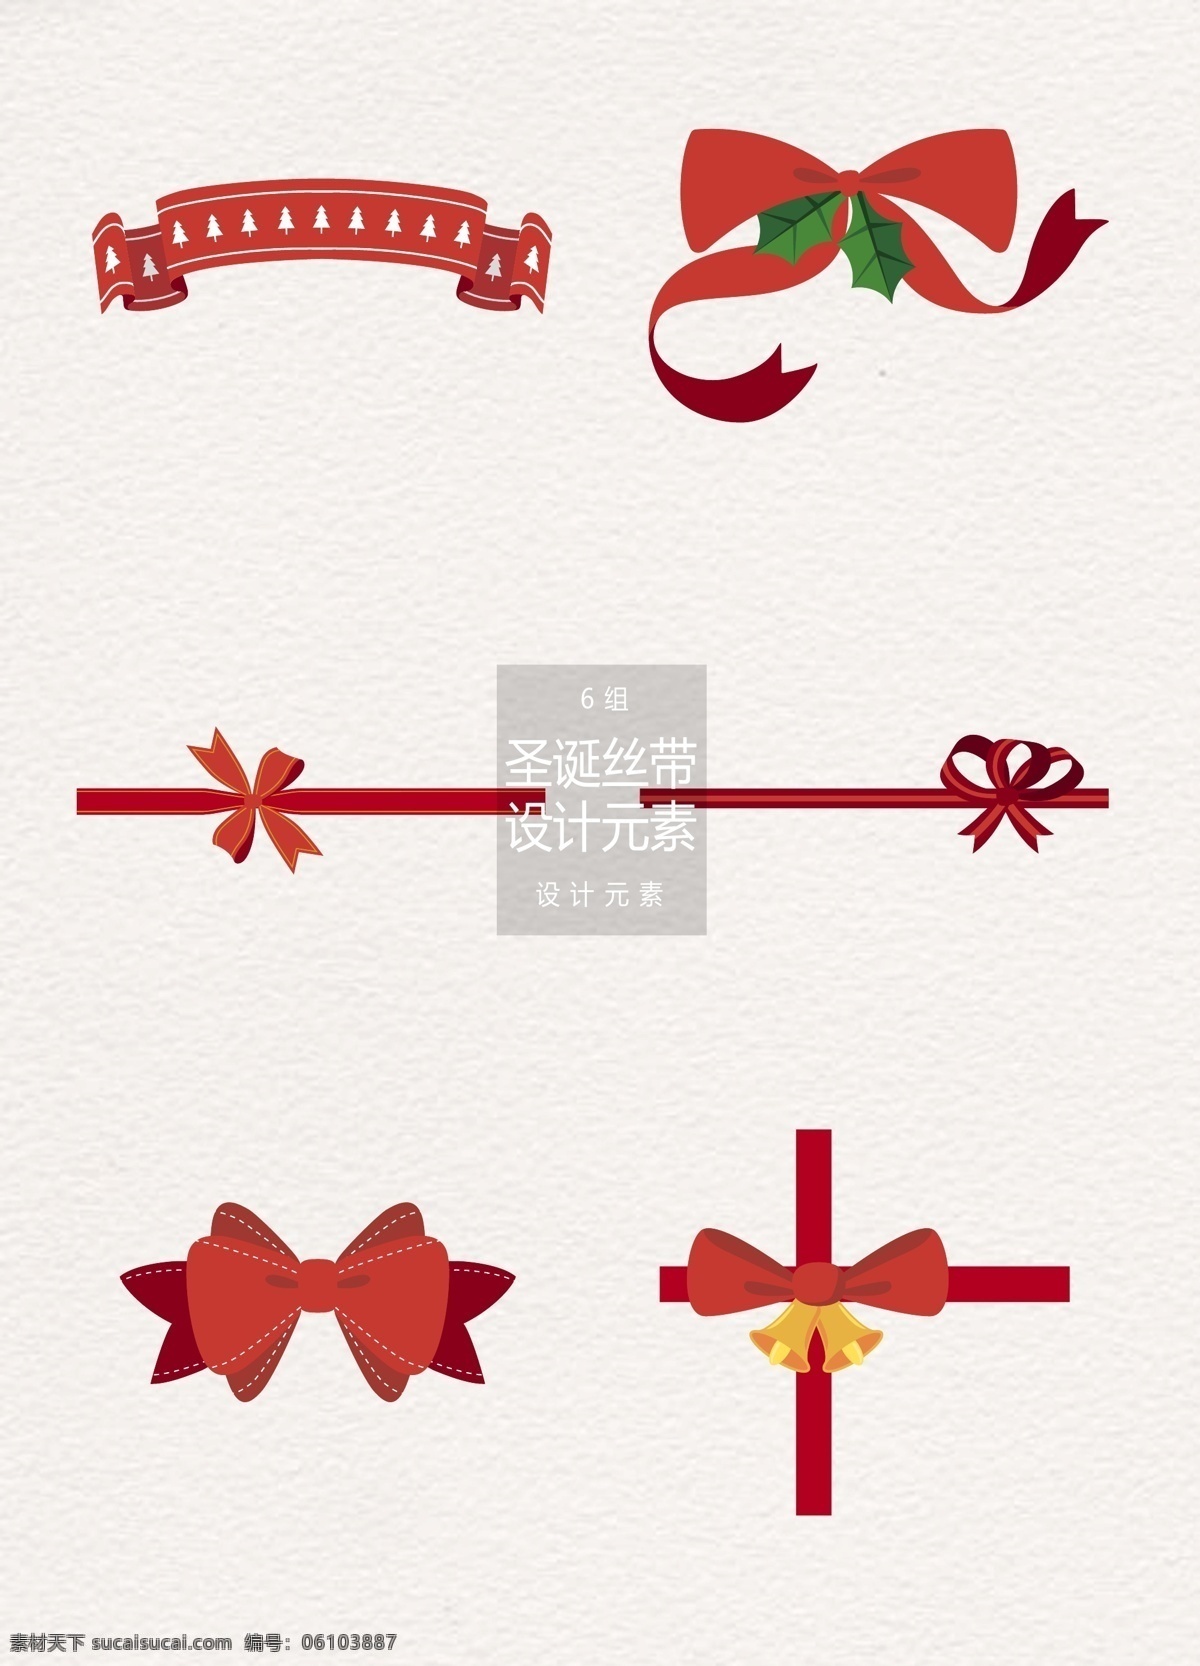 红色 圣诞 丝带 元素 红色丝带 设计元素 圣诞节 蝴蝶结 圣诞丝带